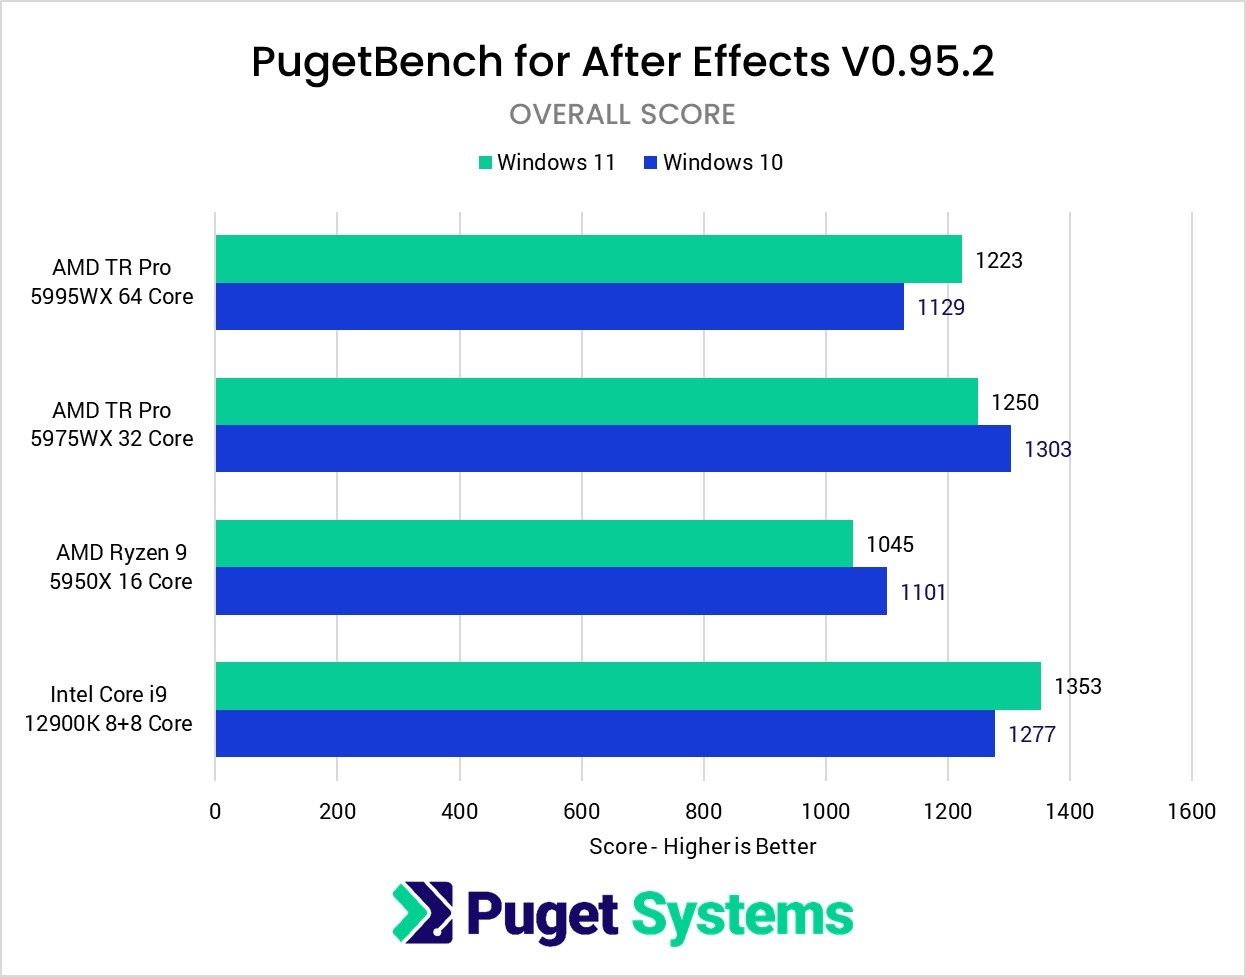 ผลทดสอบ Windows 11 เทียบกับ Windows 10 บน PugetBench พบว่าตอนนี้ประสิทธิภาพดีเท่ากันแล้ว (แต่ยังไม่ครบทุกด้าน)